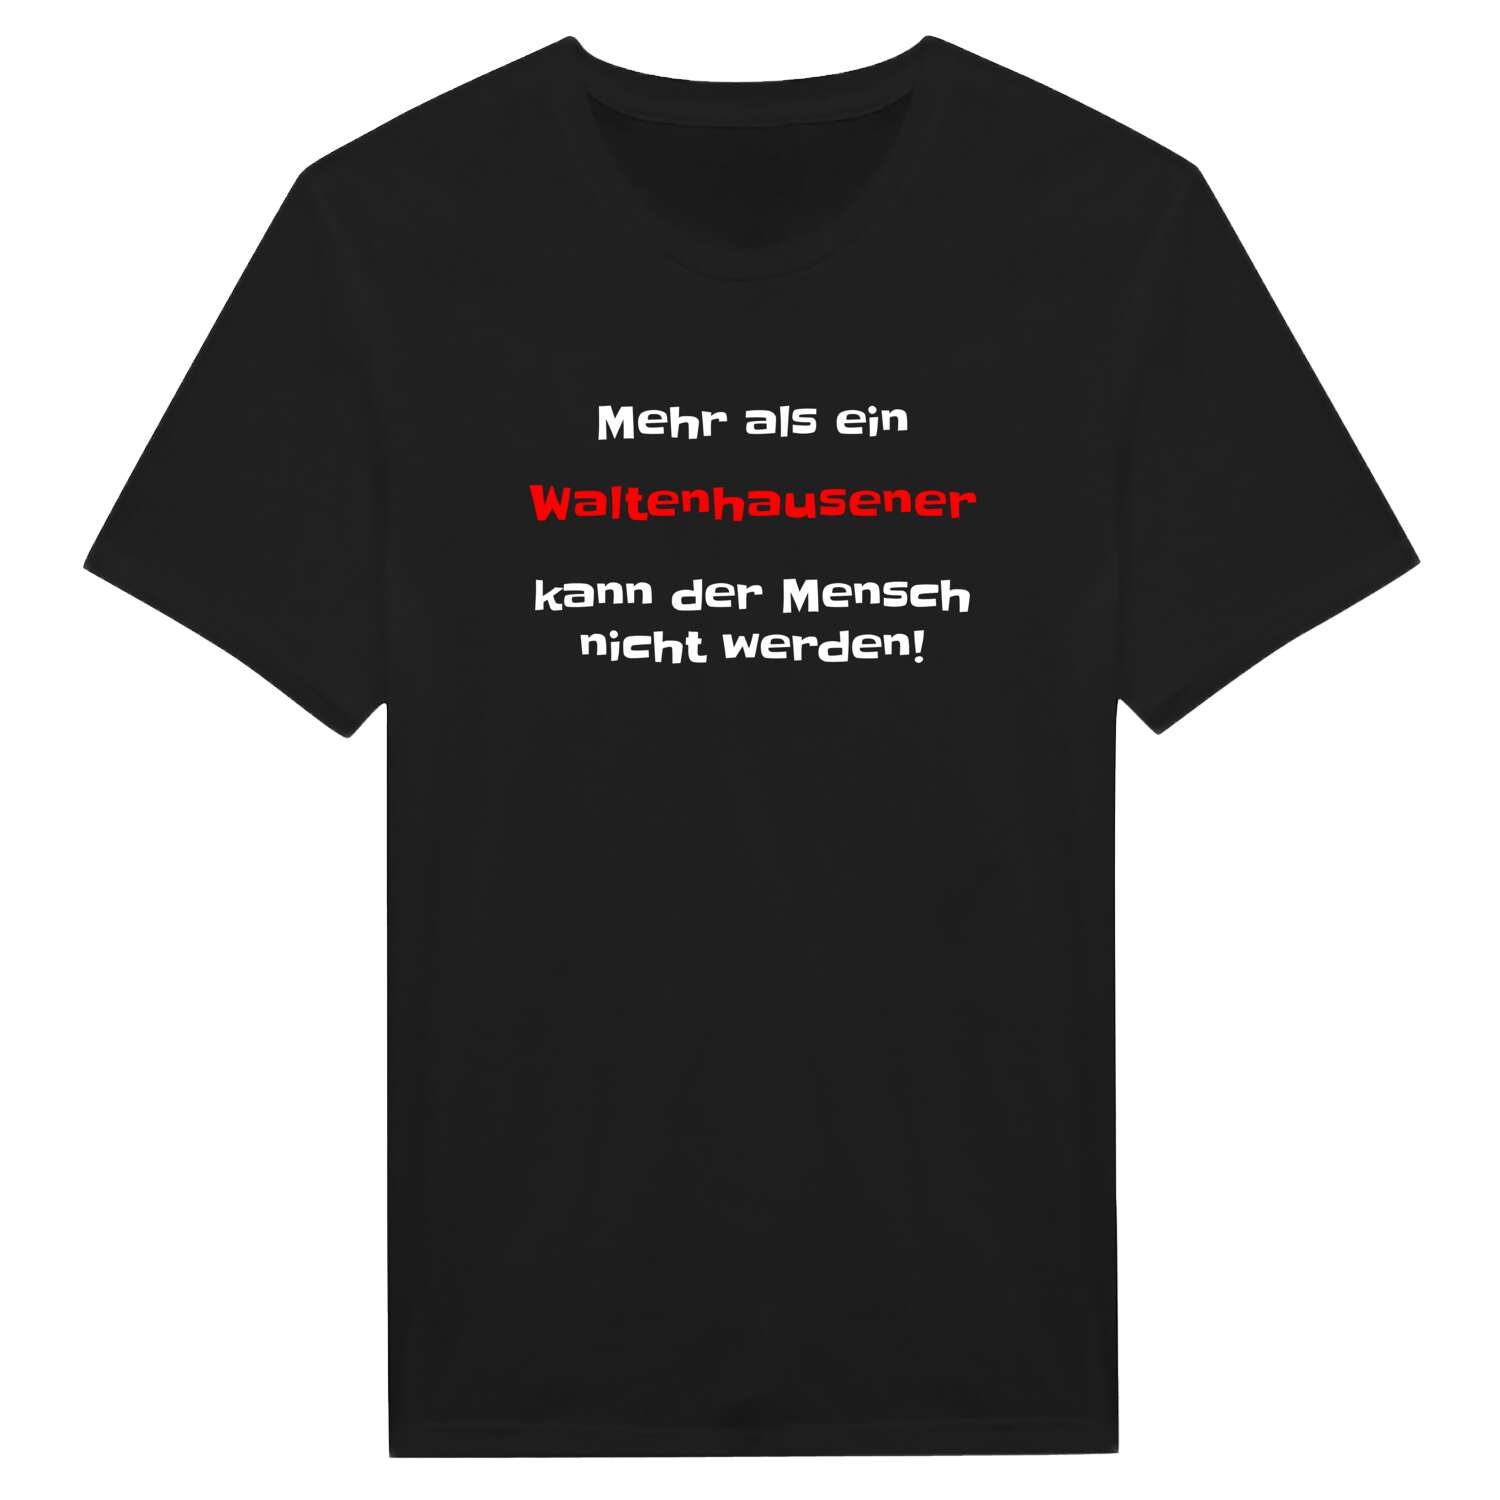 Waltenhausen T-Shirt »Mehr als ein«